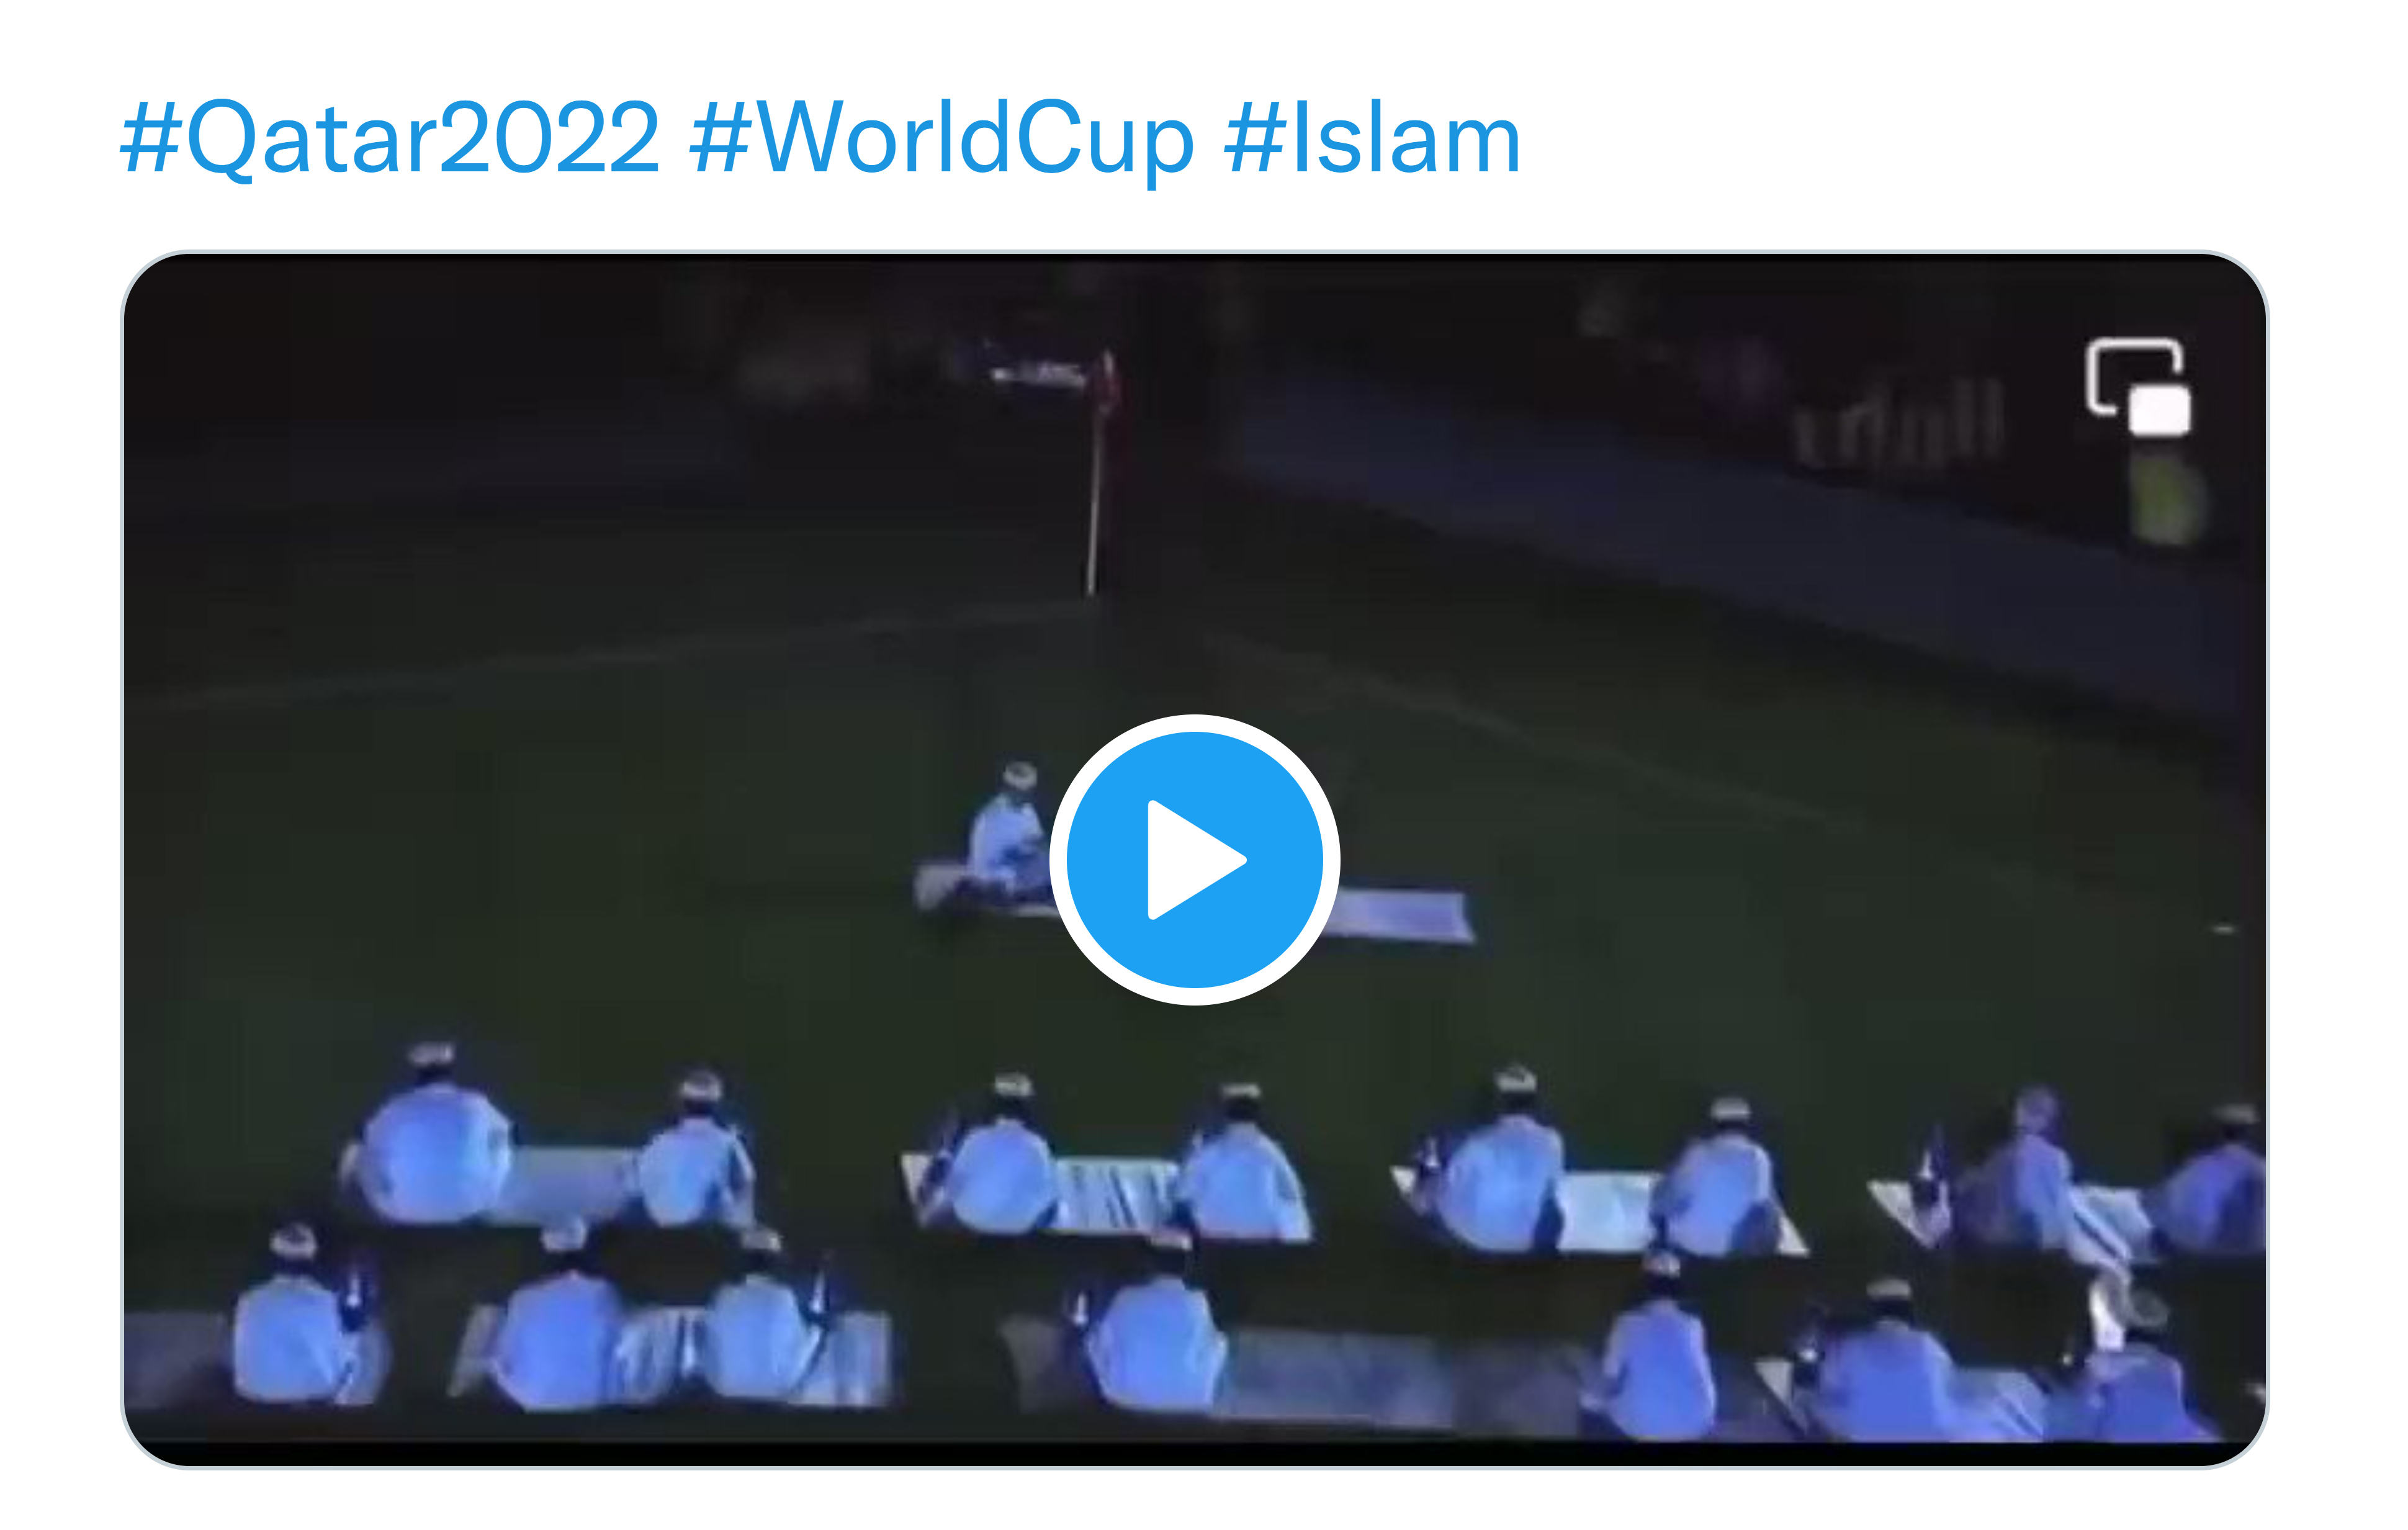 Qatar Resmikan Stadion Pagelaran FIFA Piala Dunia 2022 Dengan pembacaan Al-Quran